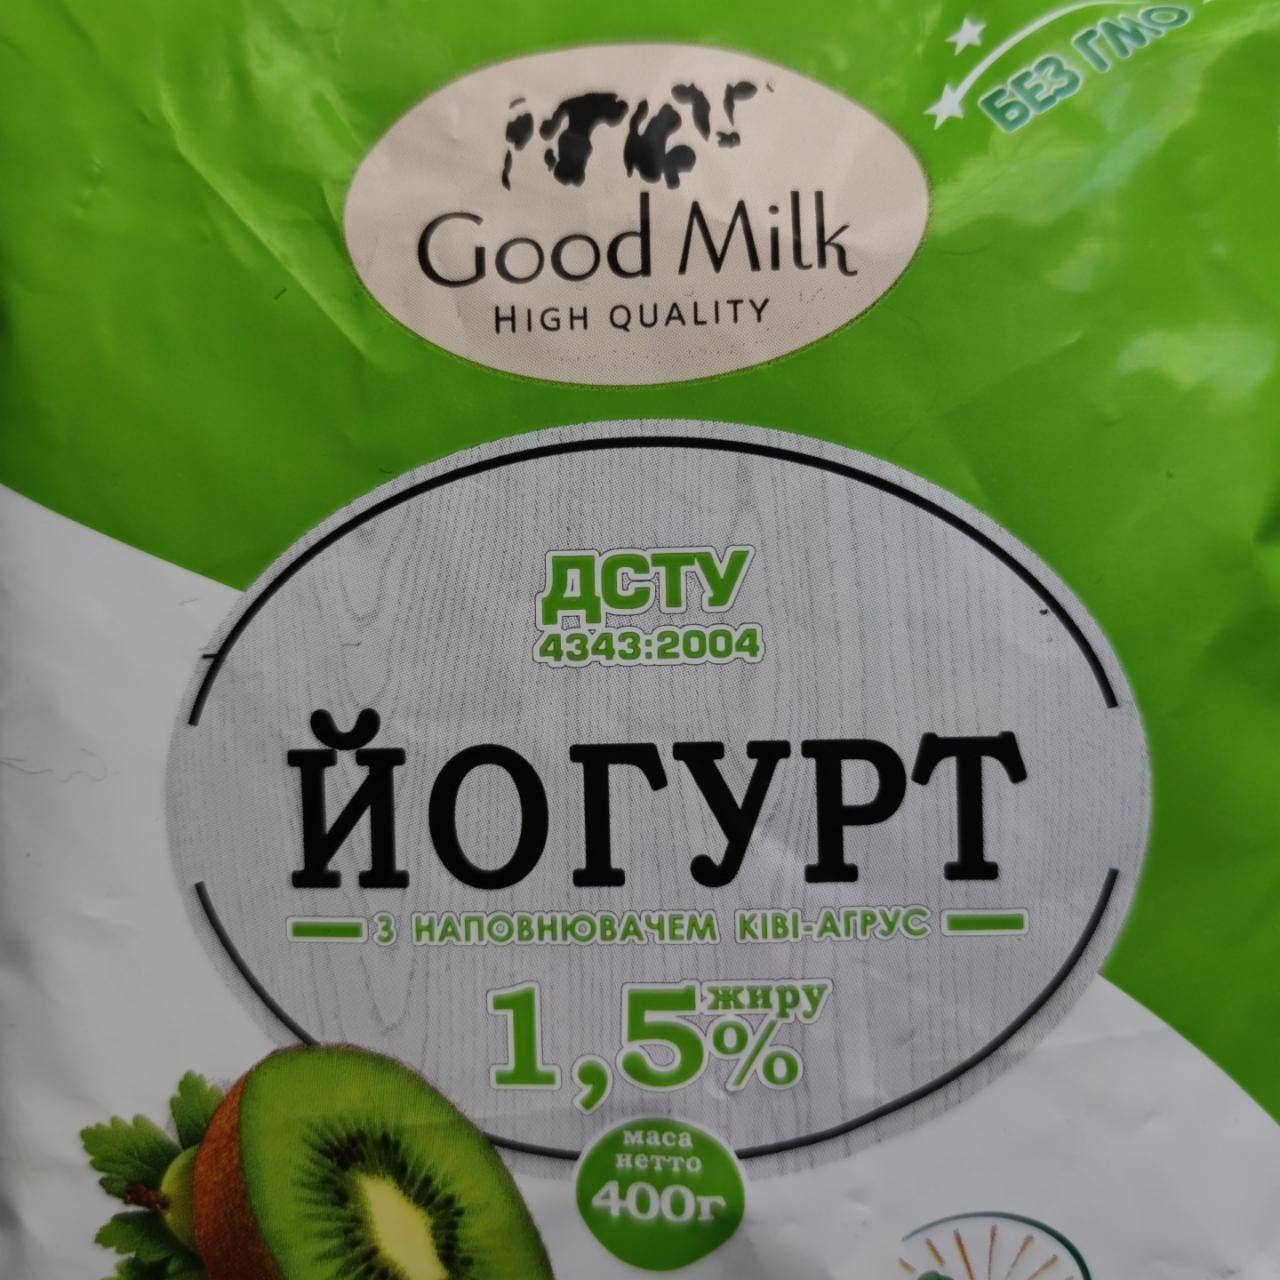 Фото - Йогурт 1.5% з наповнювачем ківі-агрус Good Milk